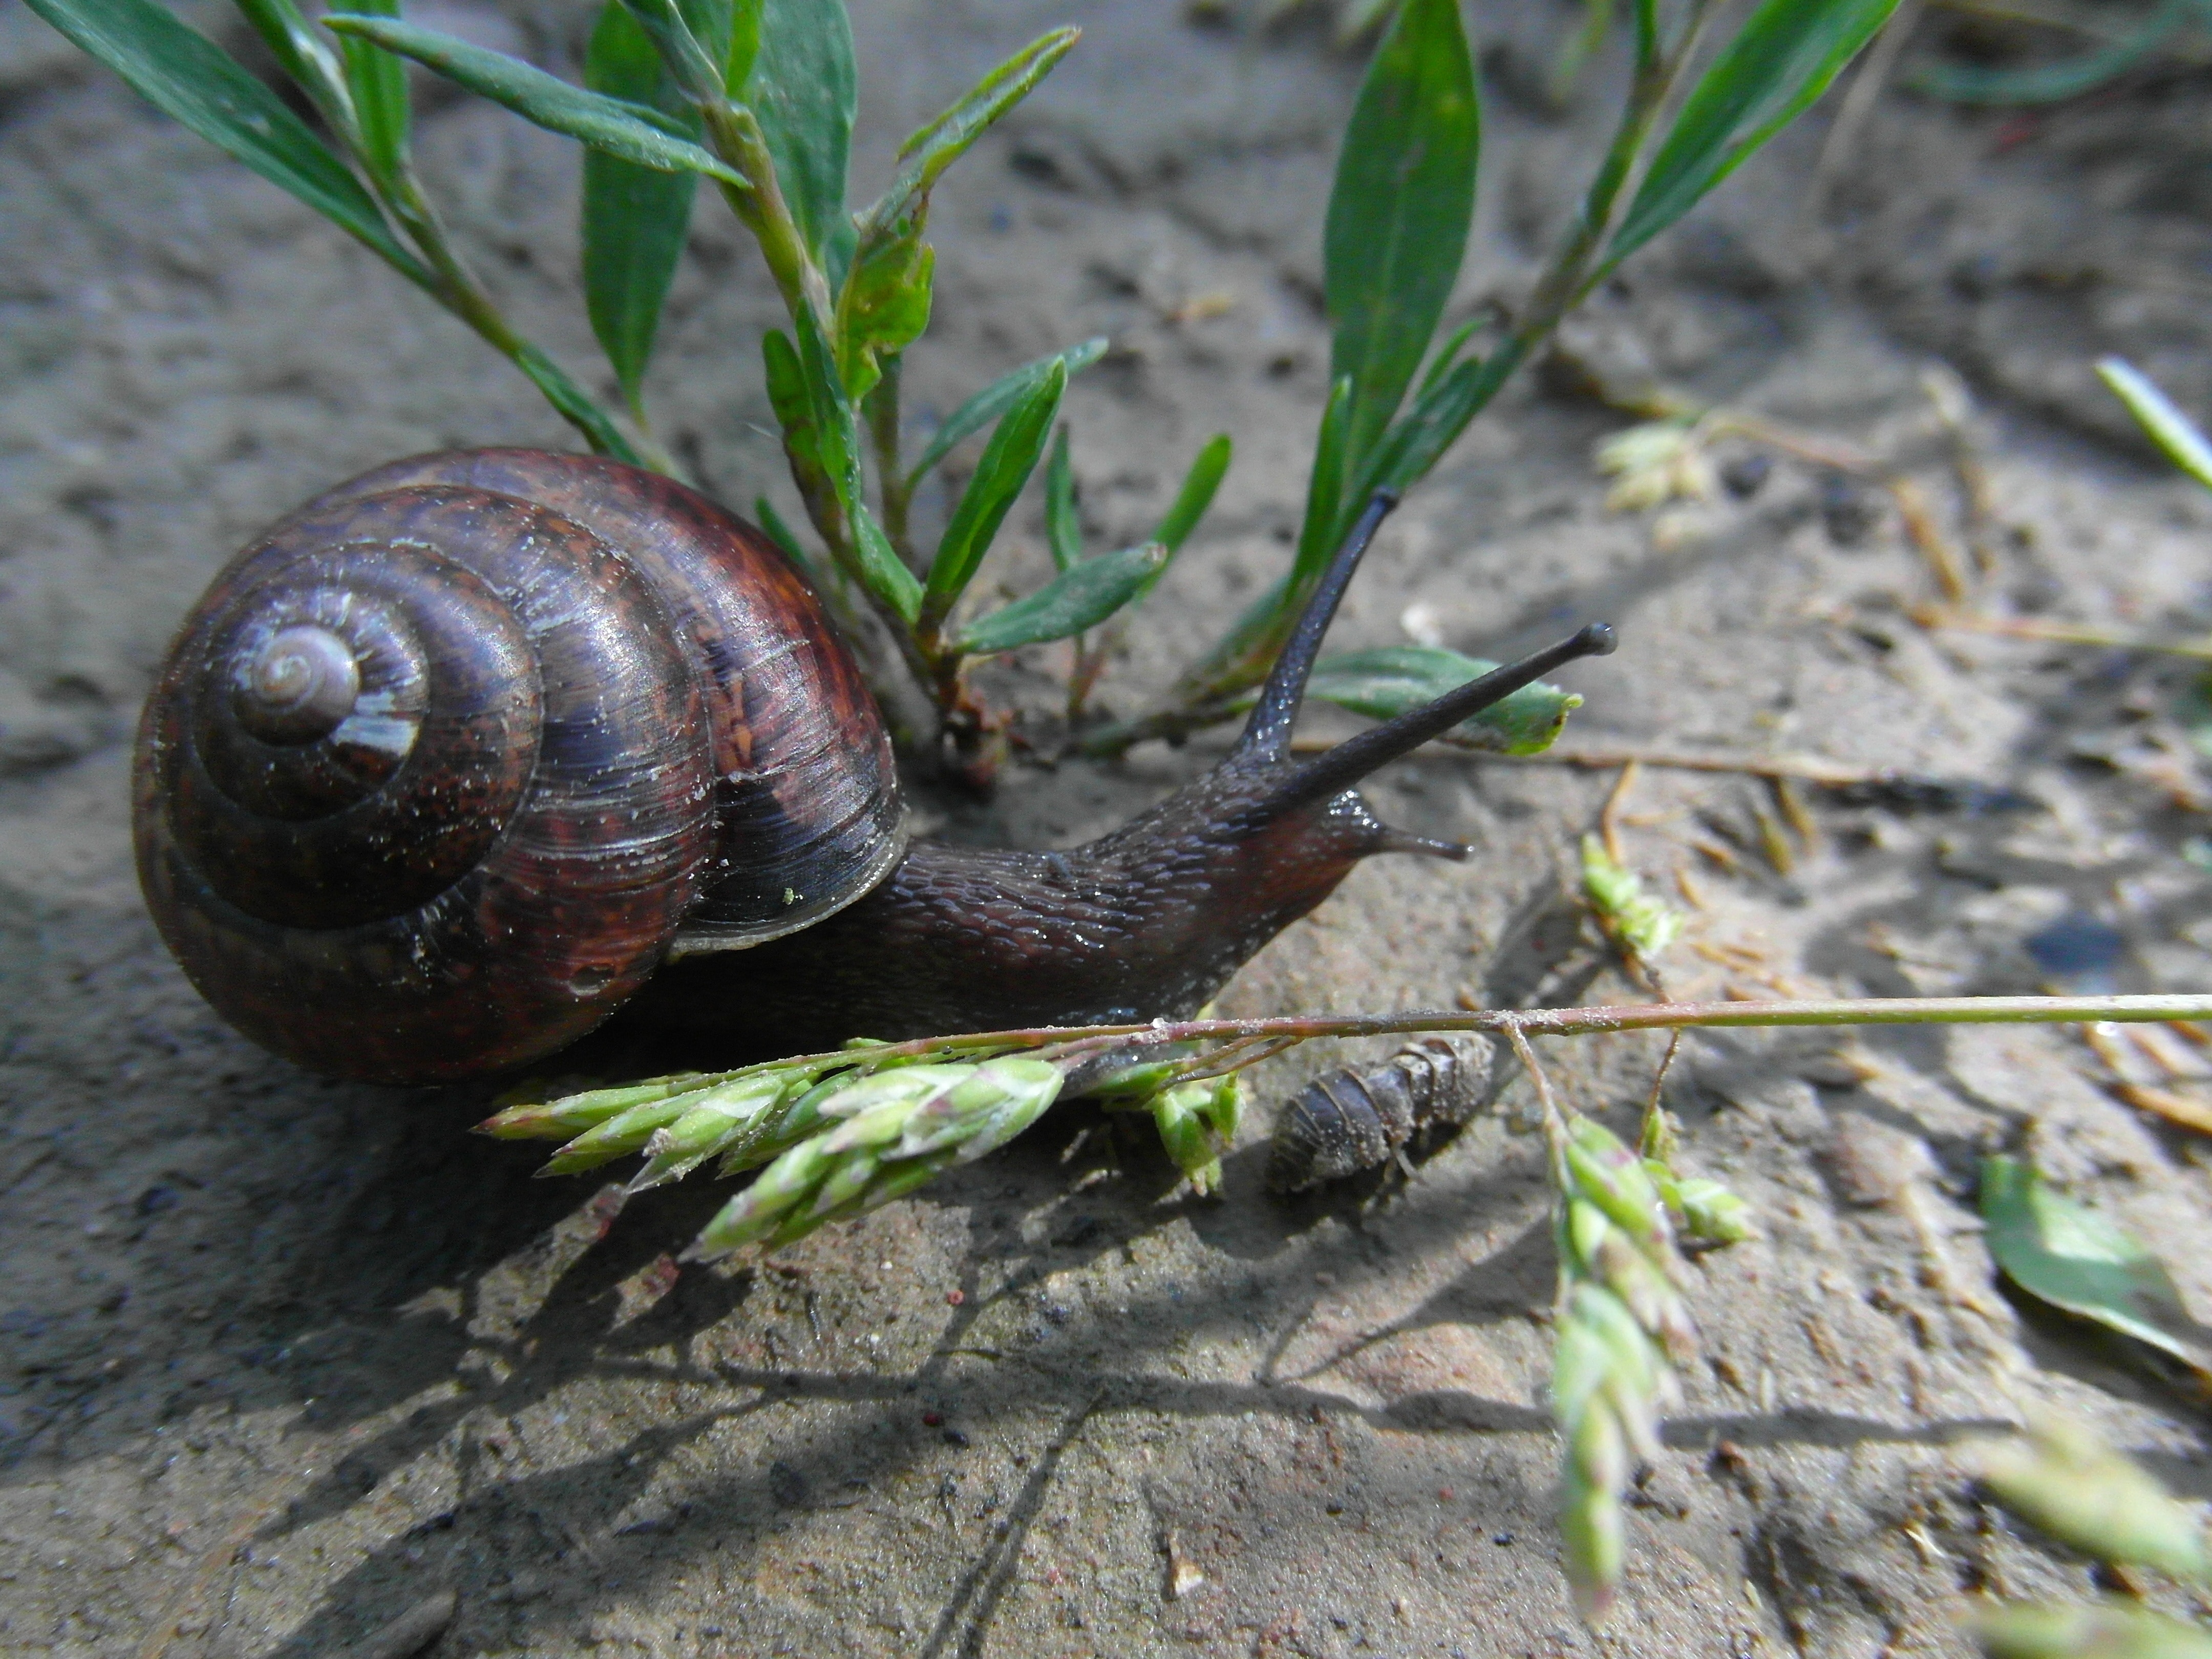 brown snail on green grass